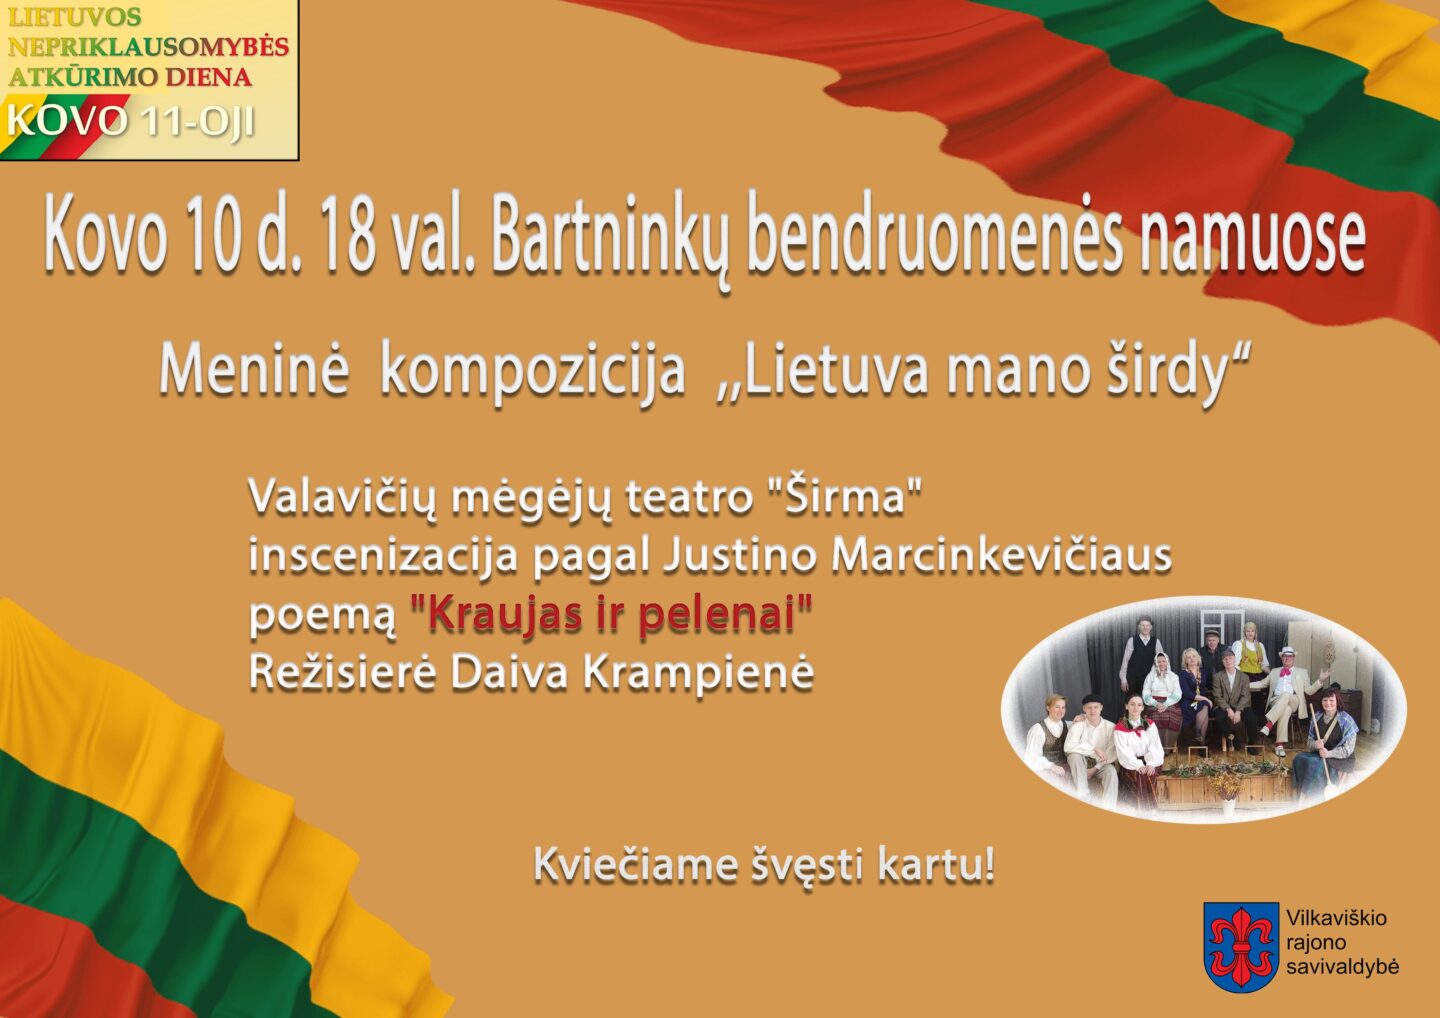 Lietuvos Nepriklausomybės atkūrimo dienos minėjimas Bartninkuose